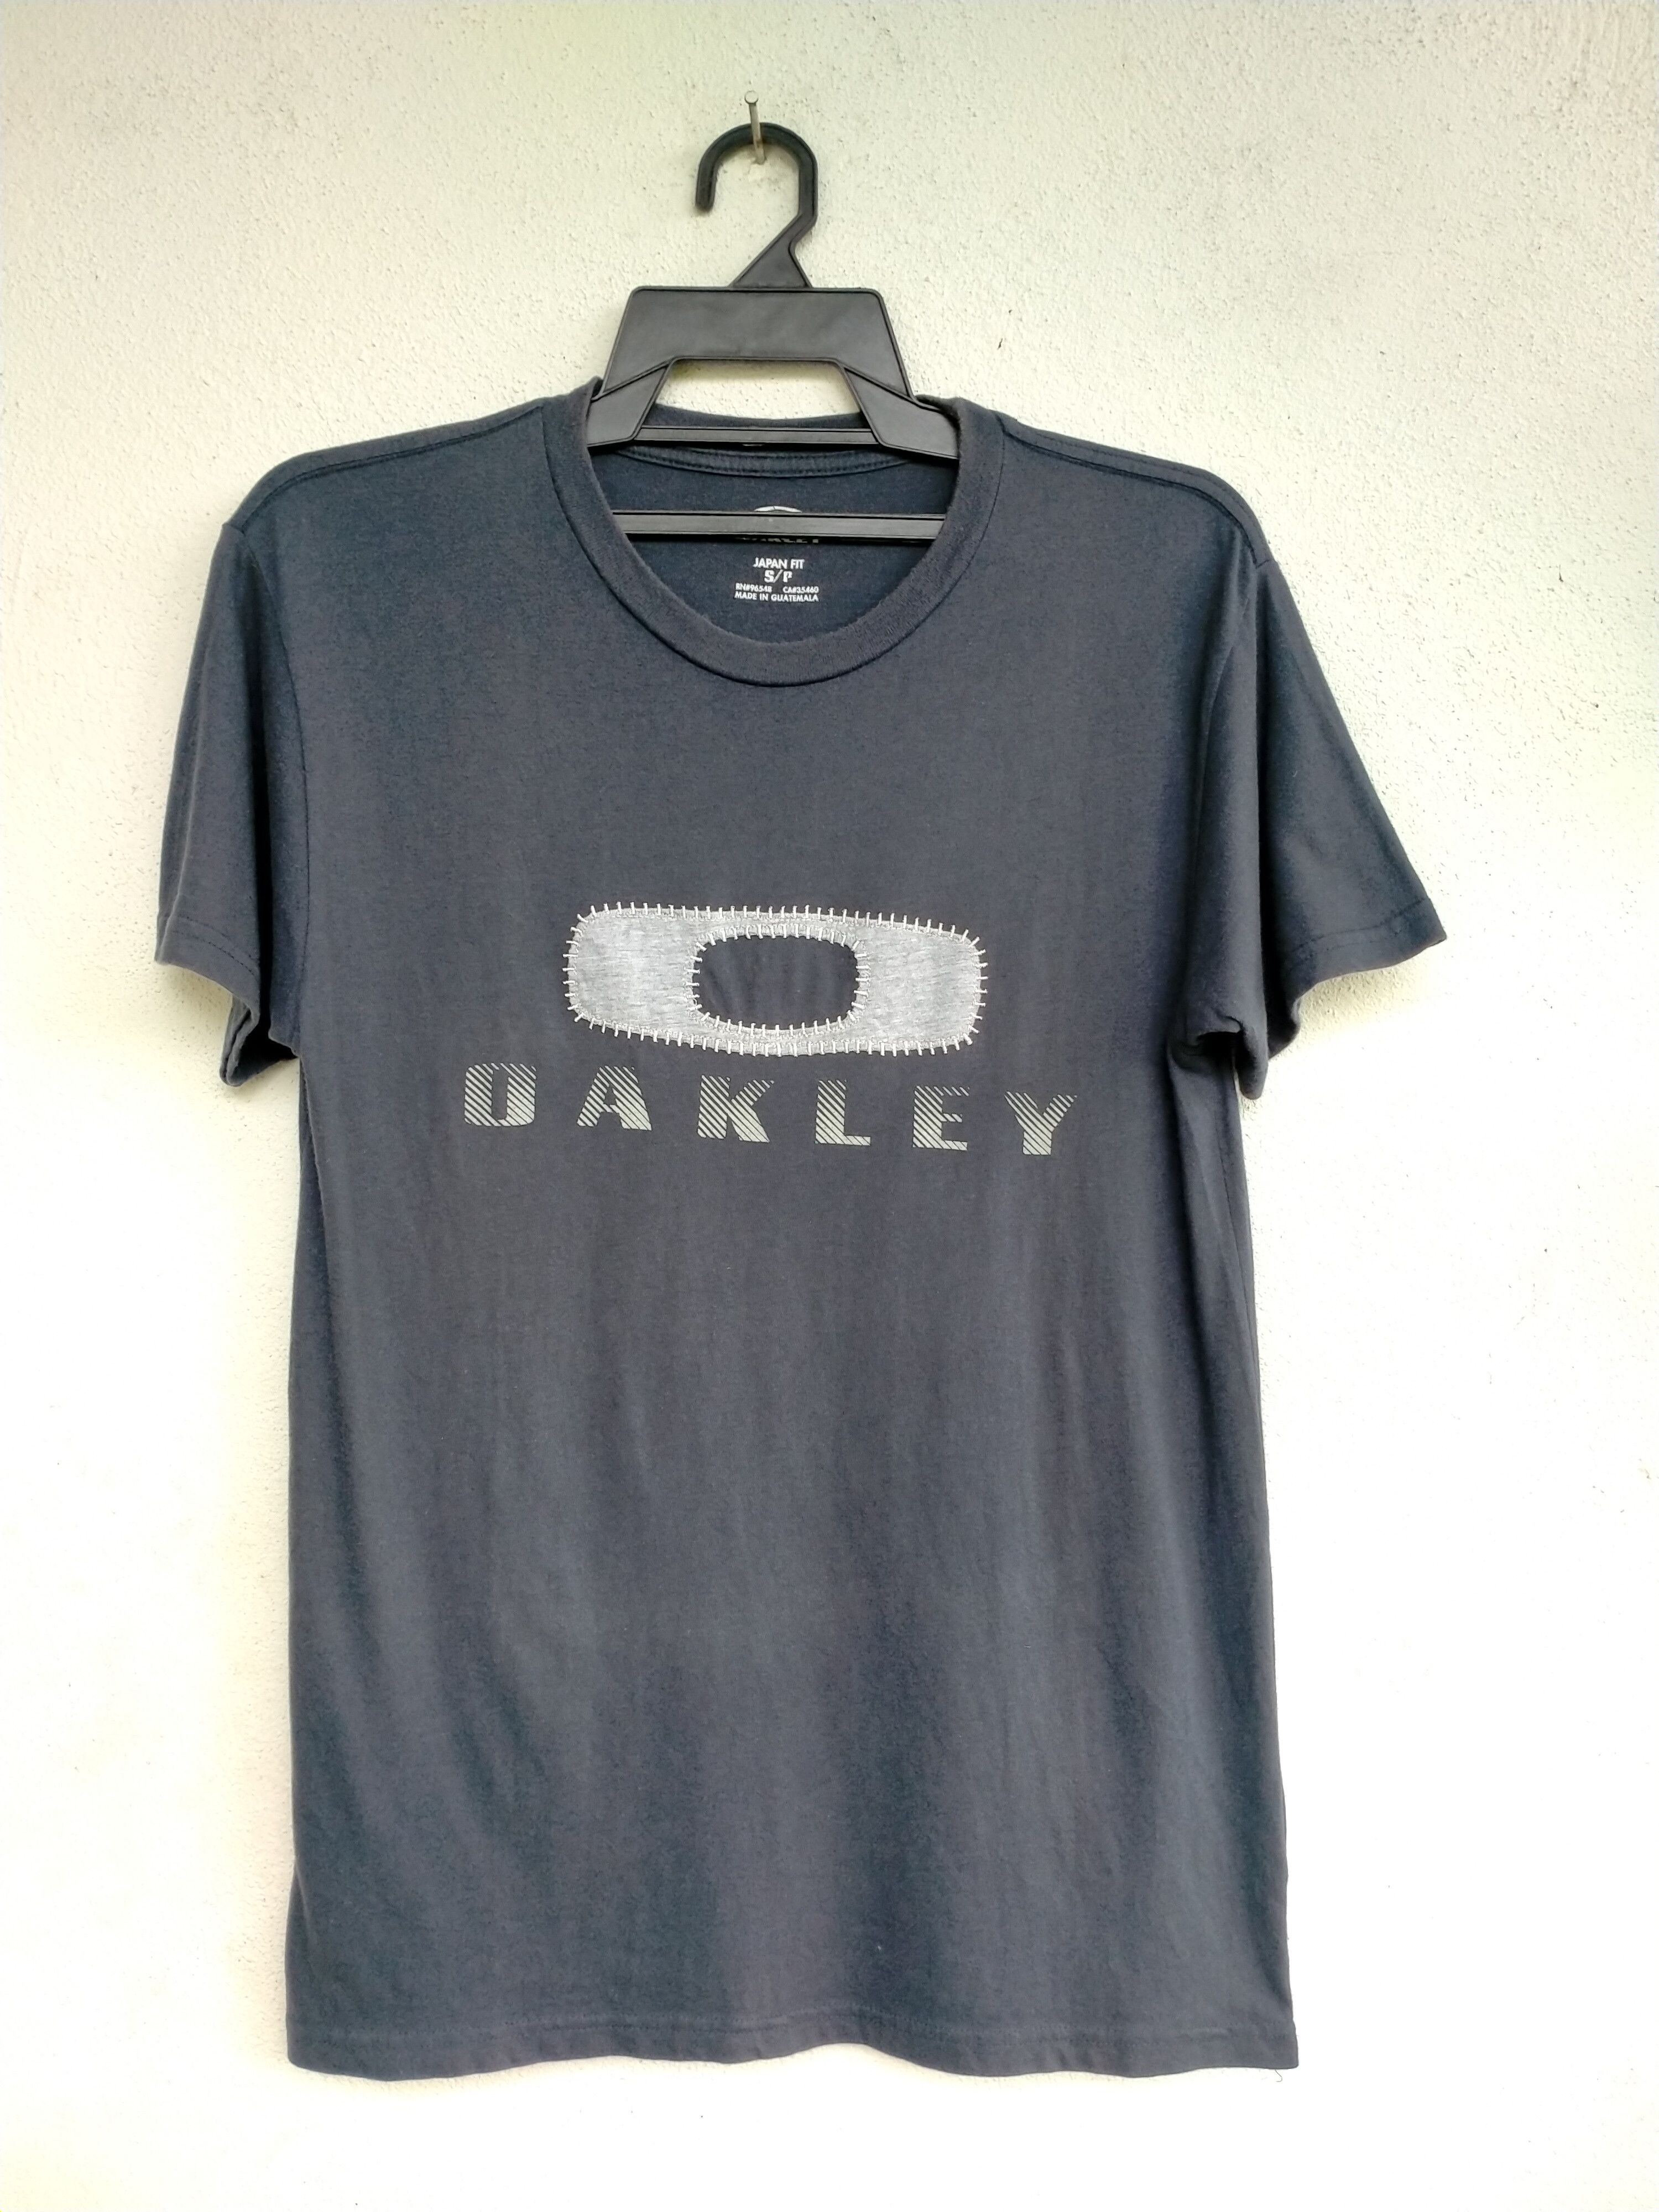 Oakley Mothtech Oakley t-shirt | Grailed